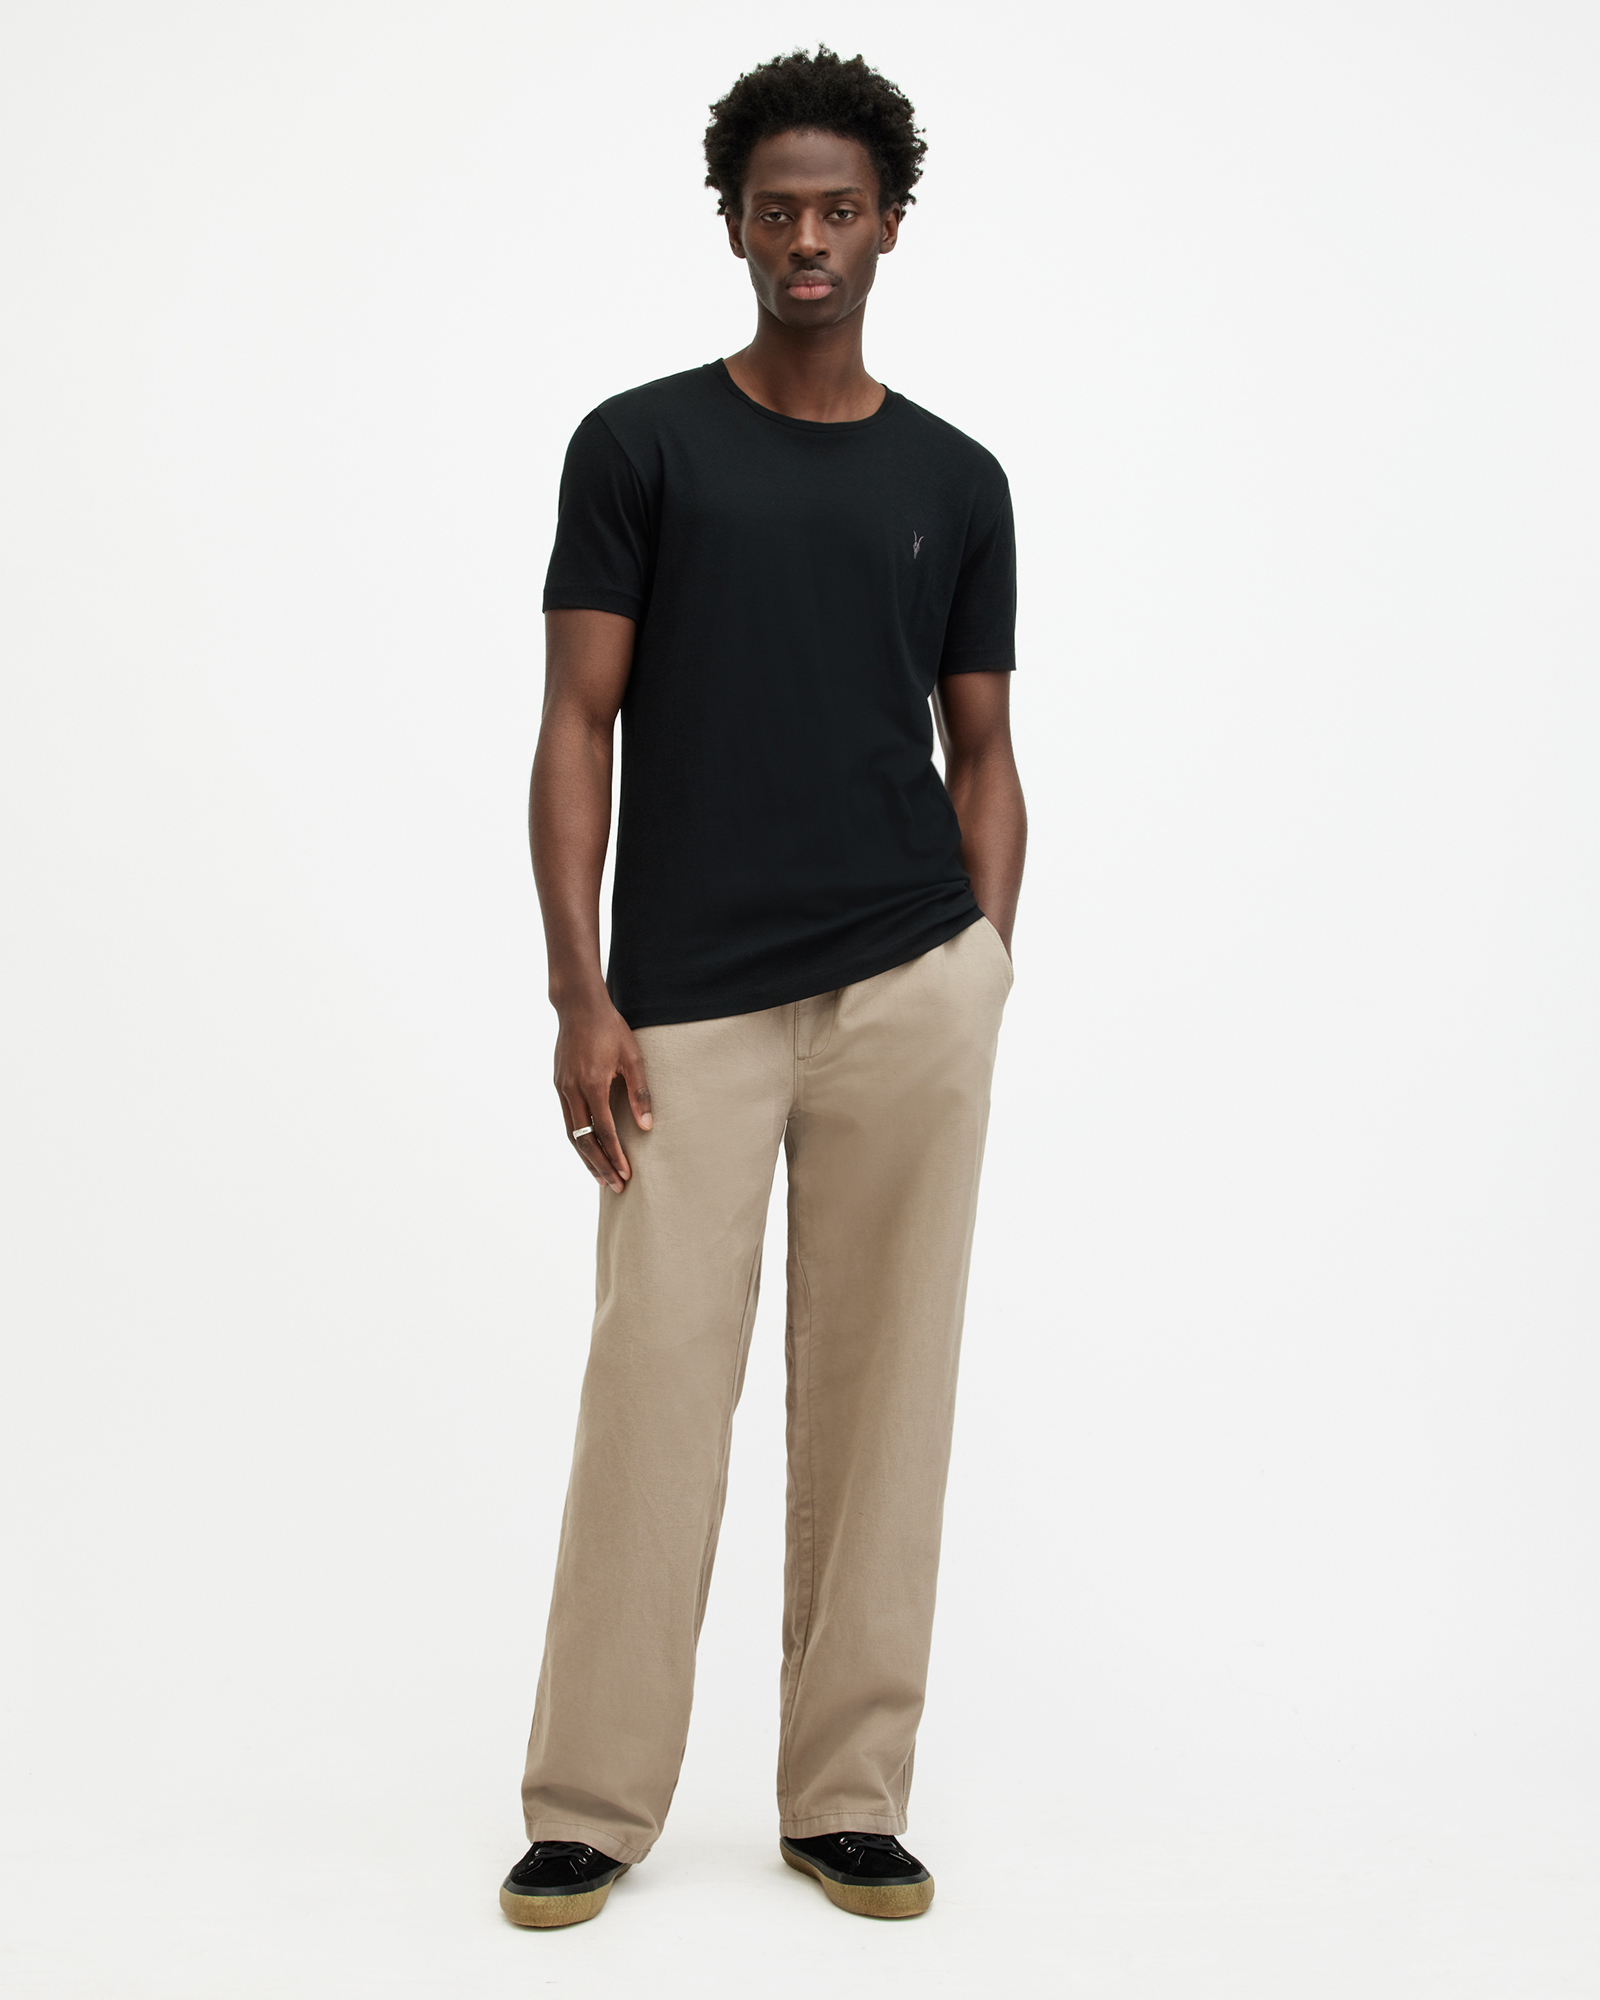 AllSaints Men's Cotton Regular Fit Tonic Crew T-Shirt, Black, Size: L